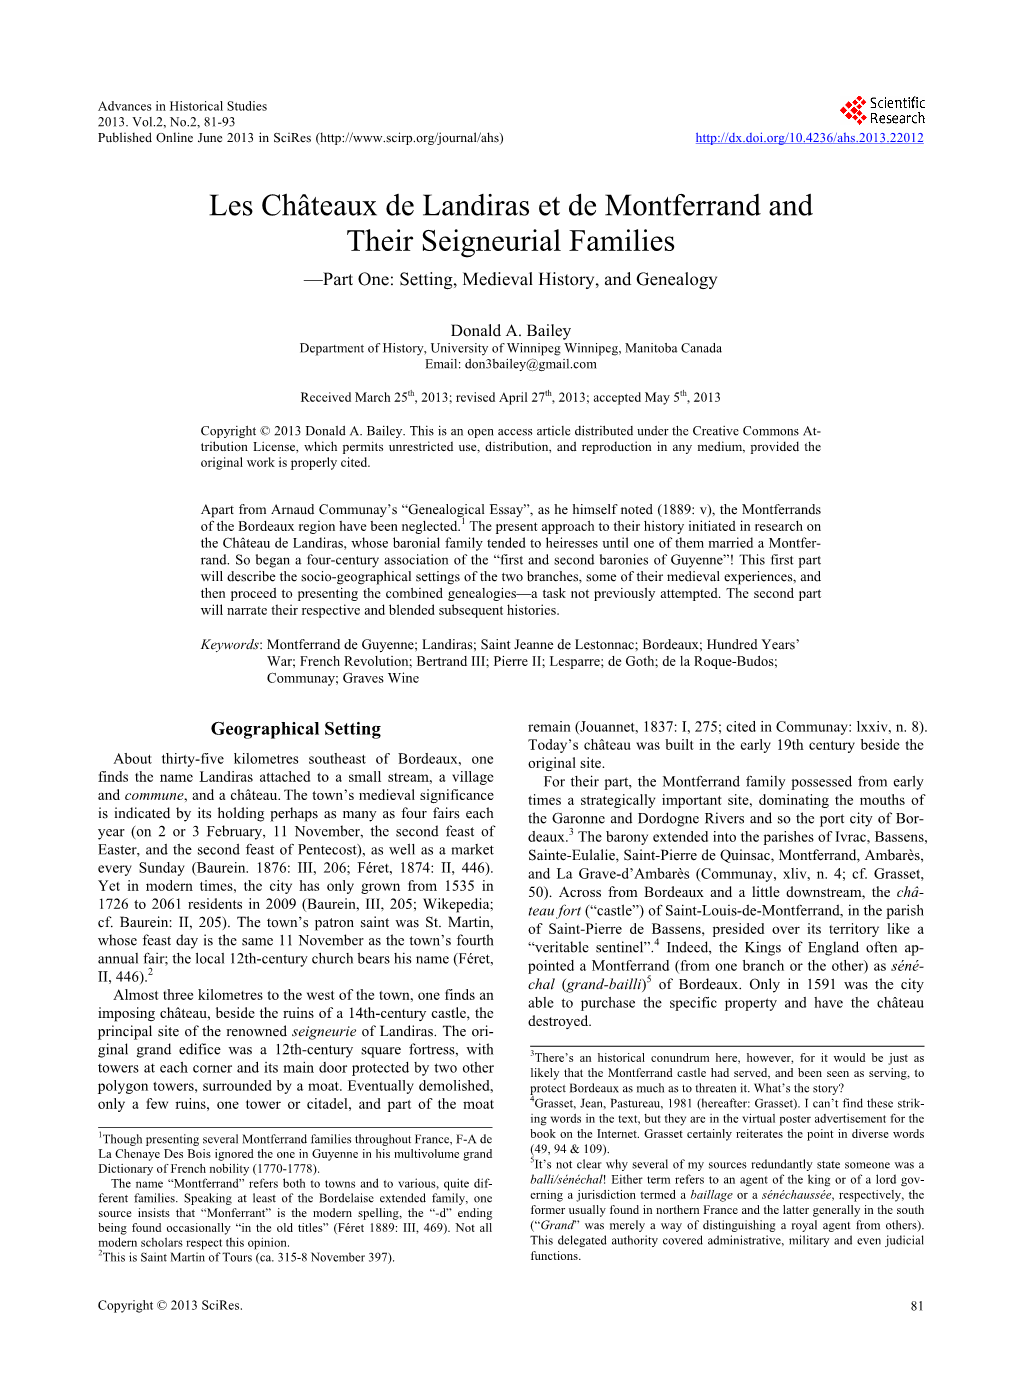 Les Châteaux De Landiras Et De Montferrand and Their Seigneurial Families —Part One: Setting, Medieval History, and Genealogy